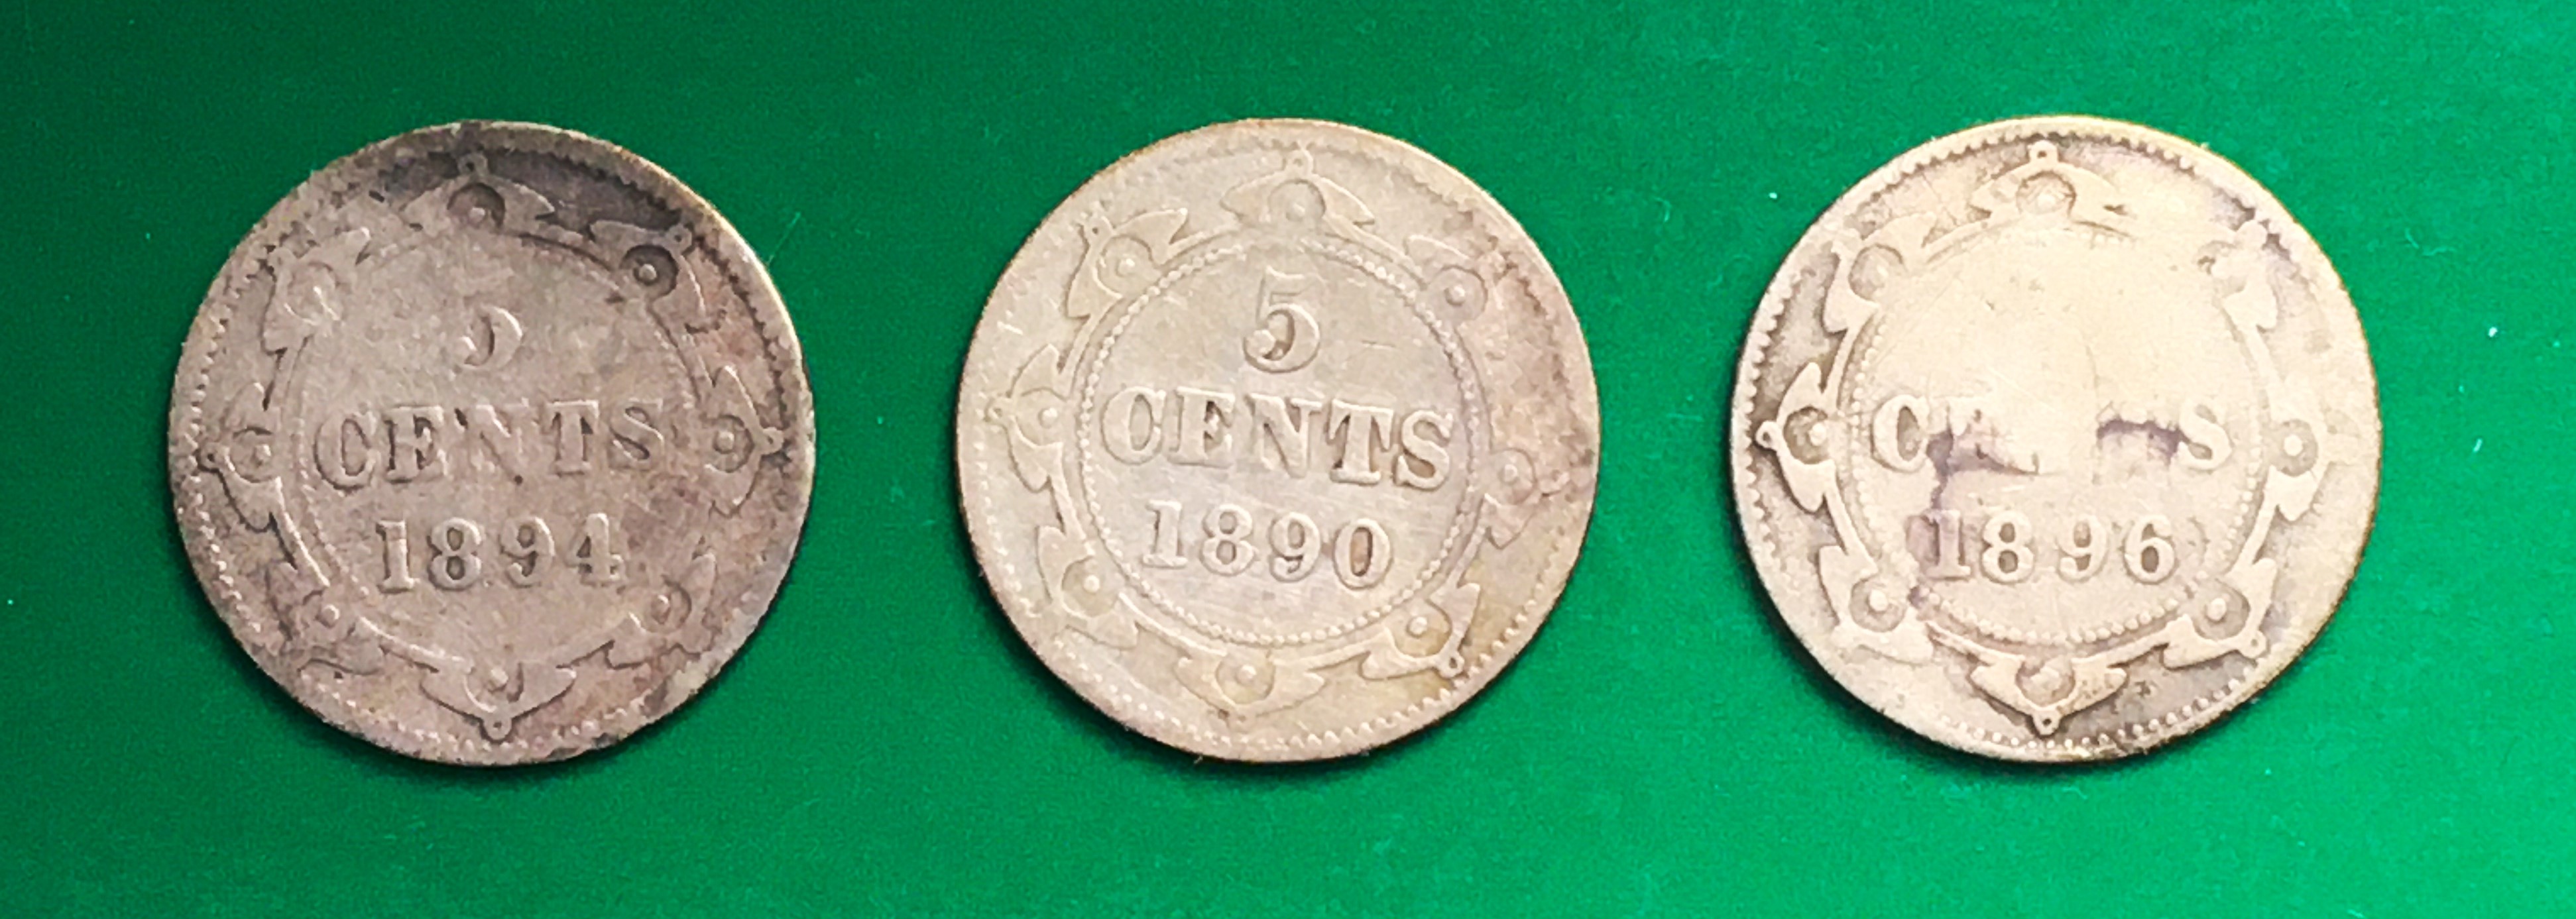 3 pièces 5 cents Terre-Neuve.JPG